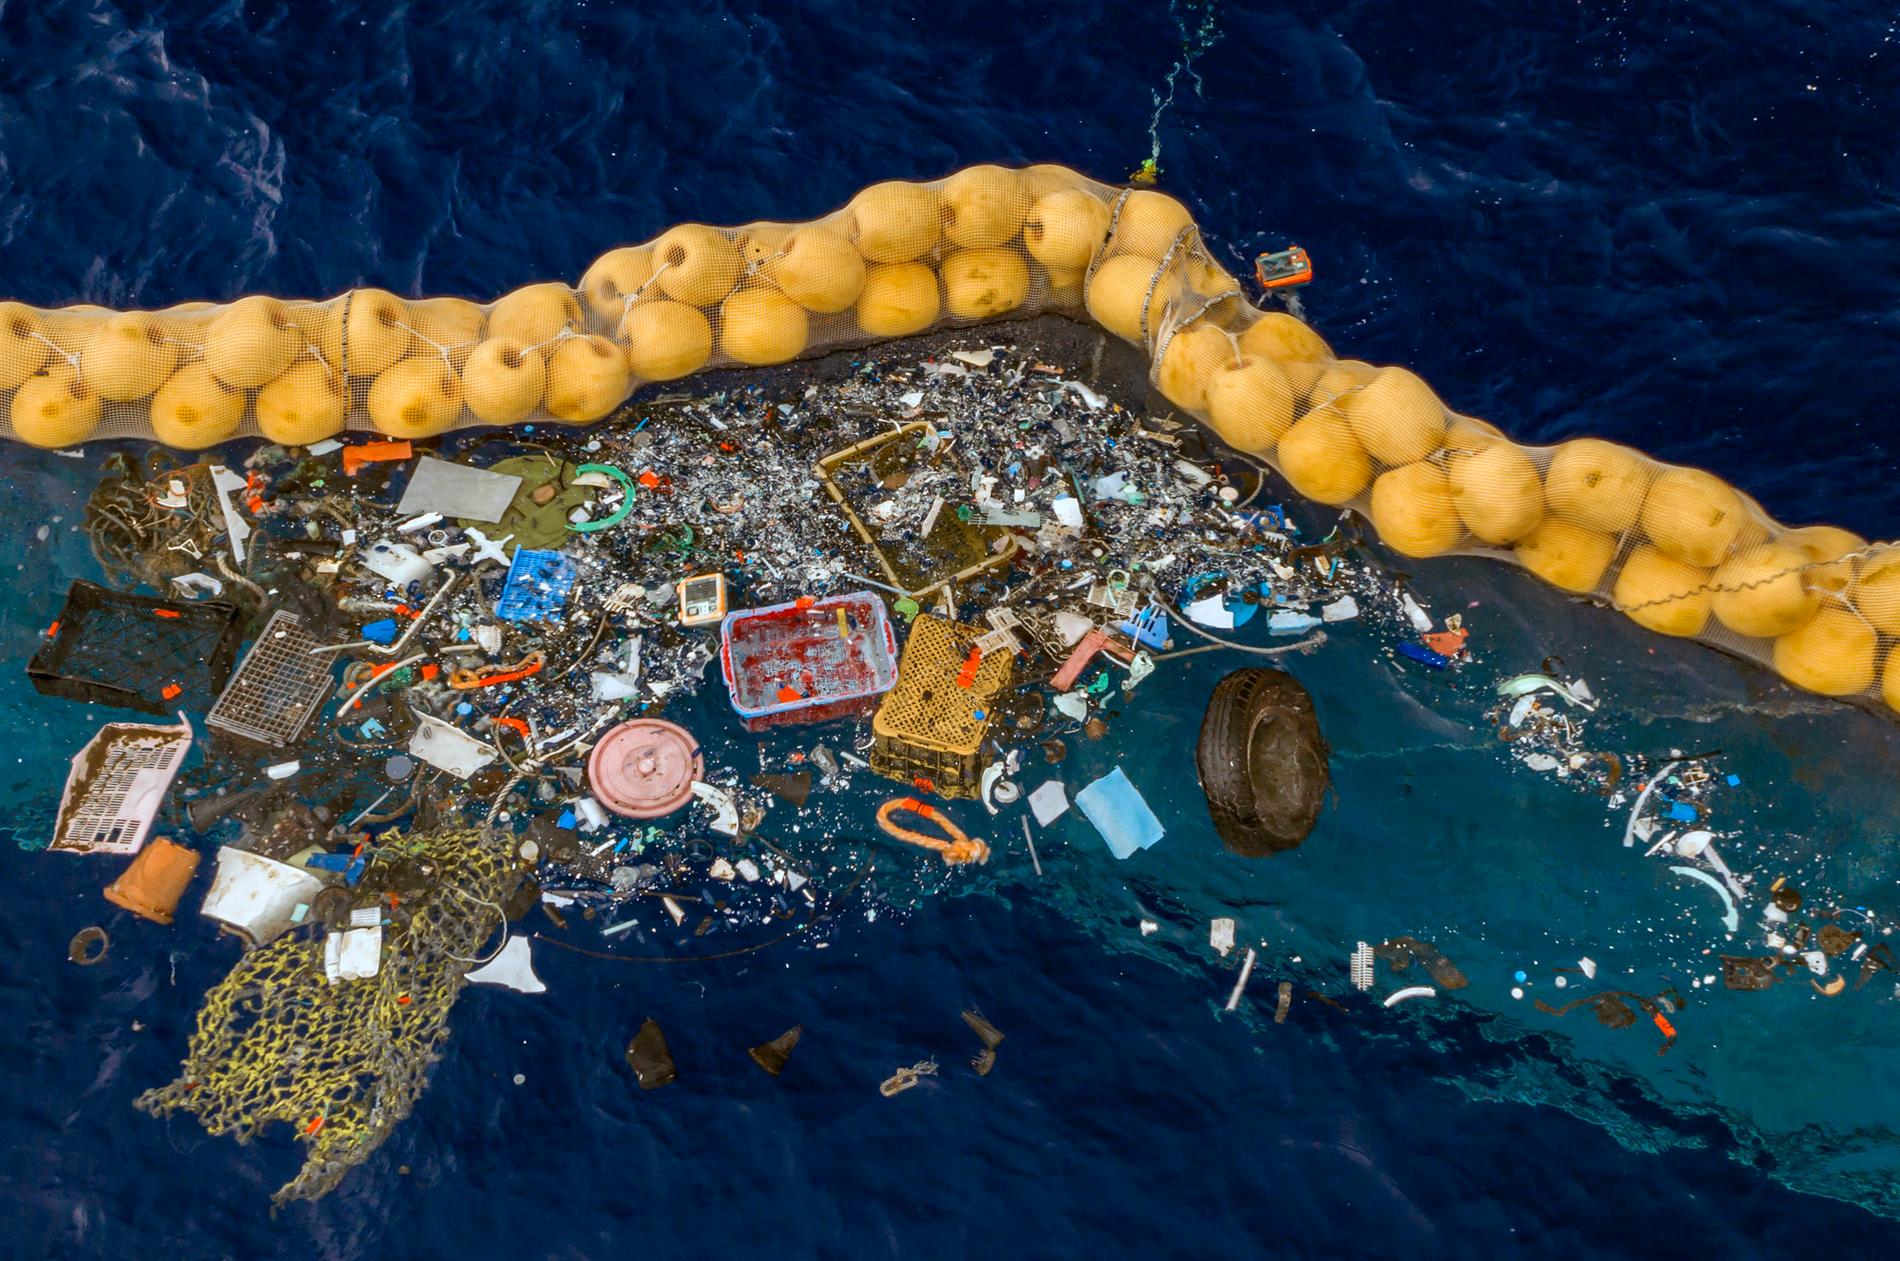 FN har pekat ut plast för engångsbruk som ett stort klimatproblem. Stora mängder antingen grävs ned, dumpas i vattendrag eller hamnar i havet. Kina försöker nu minska användningen av plast genom att införa flera förbud. Arkivbild.